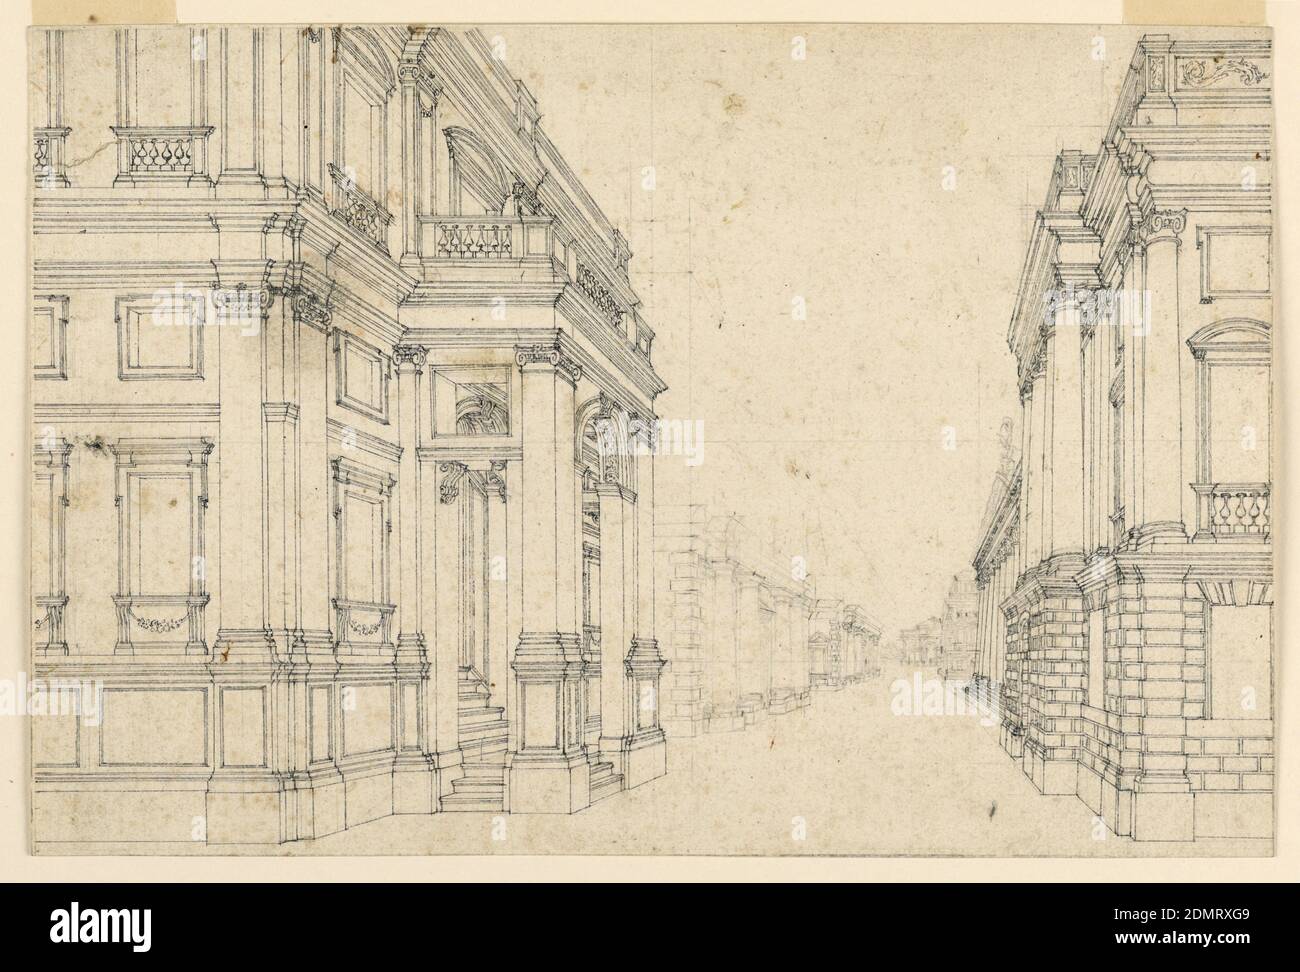 Diseño de escenario: Calle de la ciudad con Palacios, pluma y tinta negra, lápiz, Italia, finales del siglo 18, teatro, dibujo Foto de stock